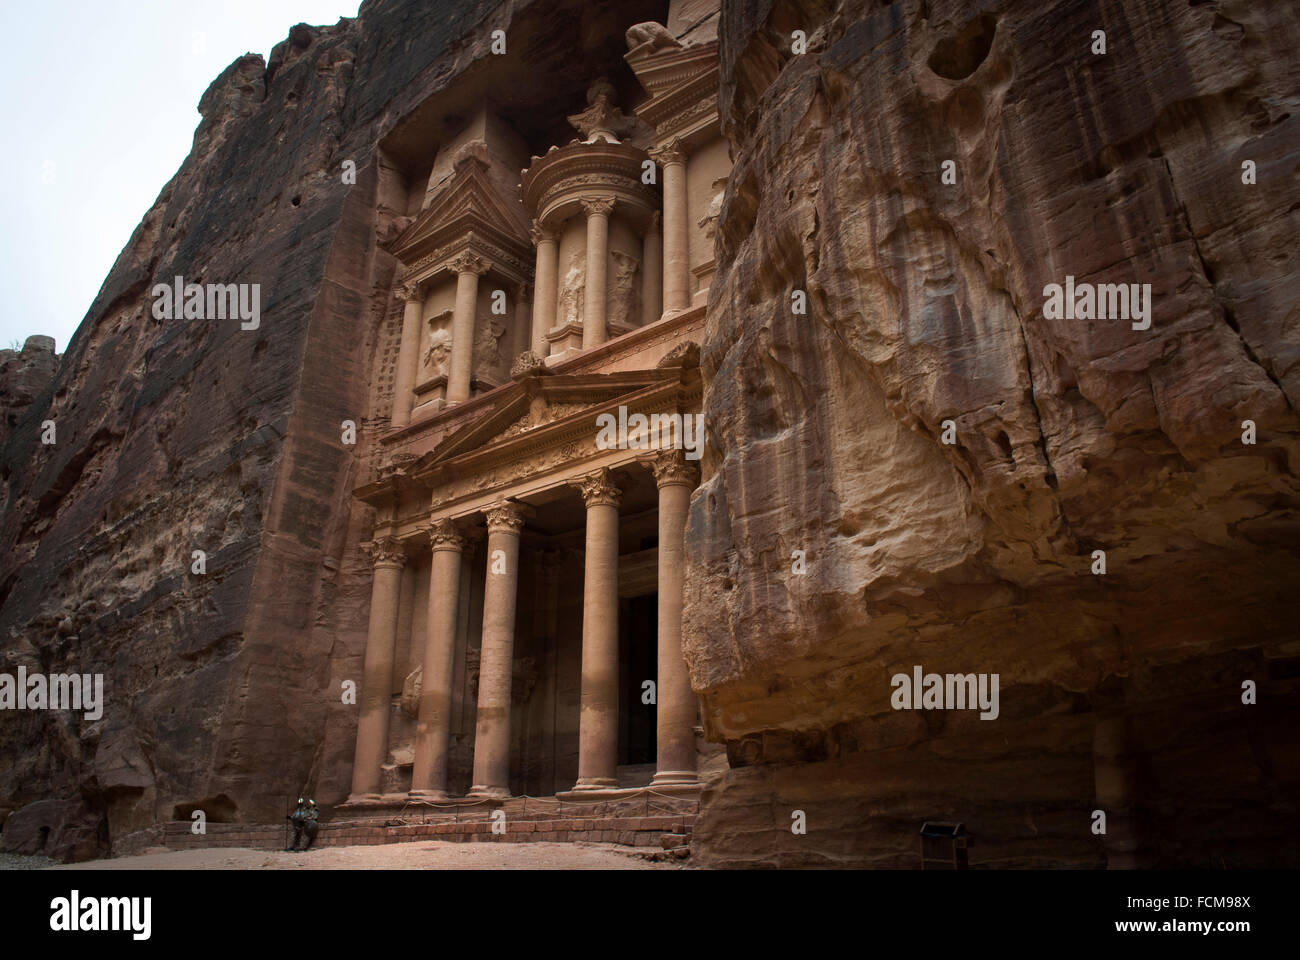 Al Khazneh (The Treasury) in Petra, Jordan. Stock Photo